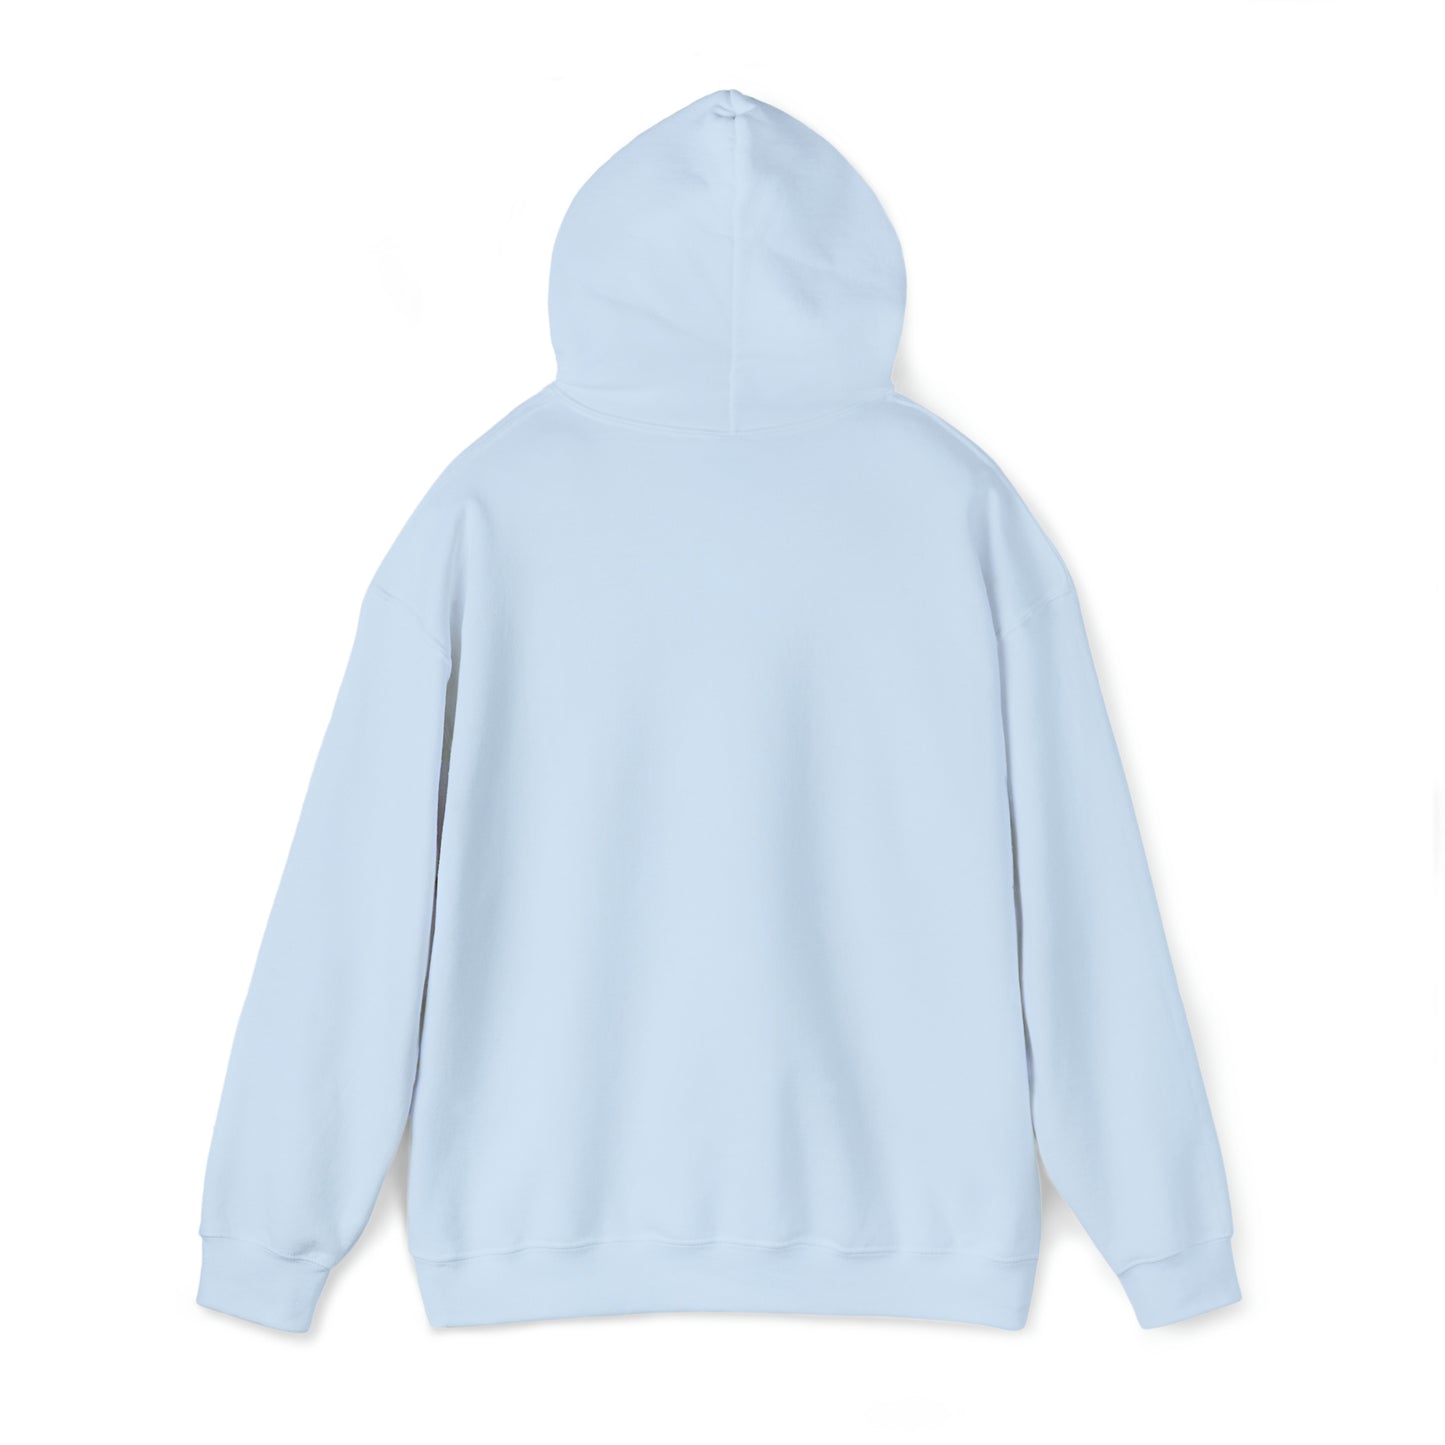 I jerk-it Unisex Heavy Blend™ Hooded Sweatshirt